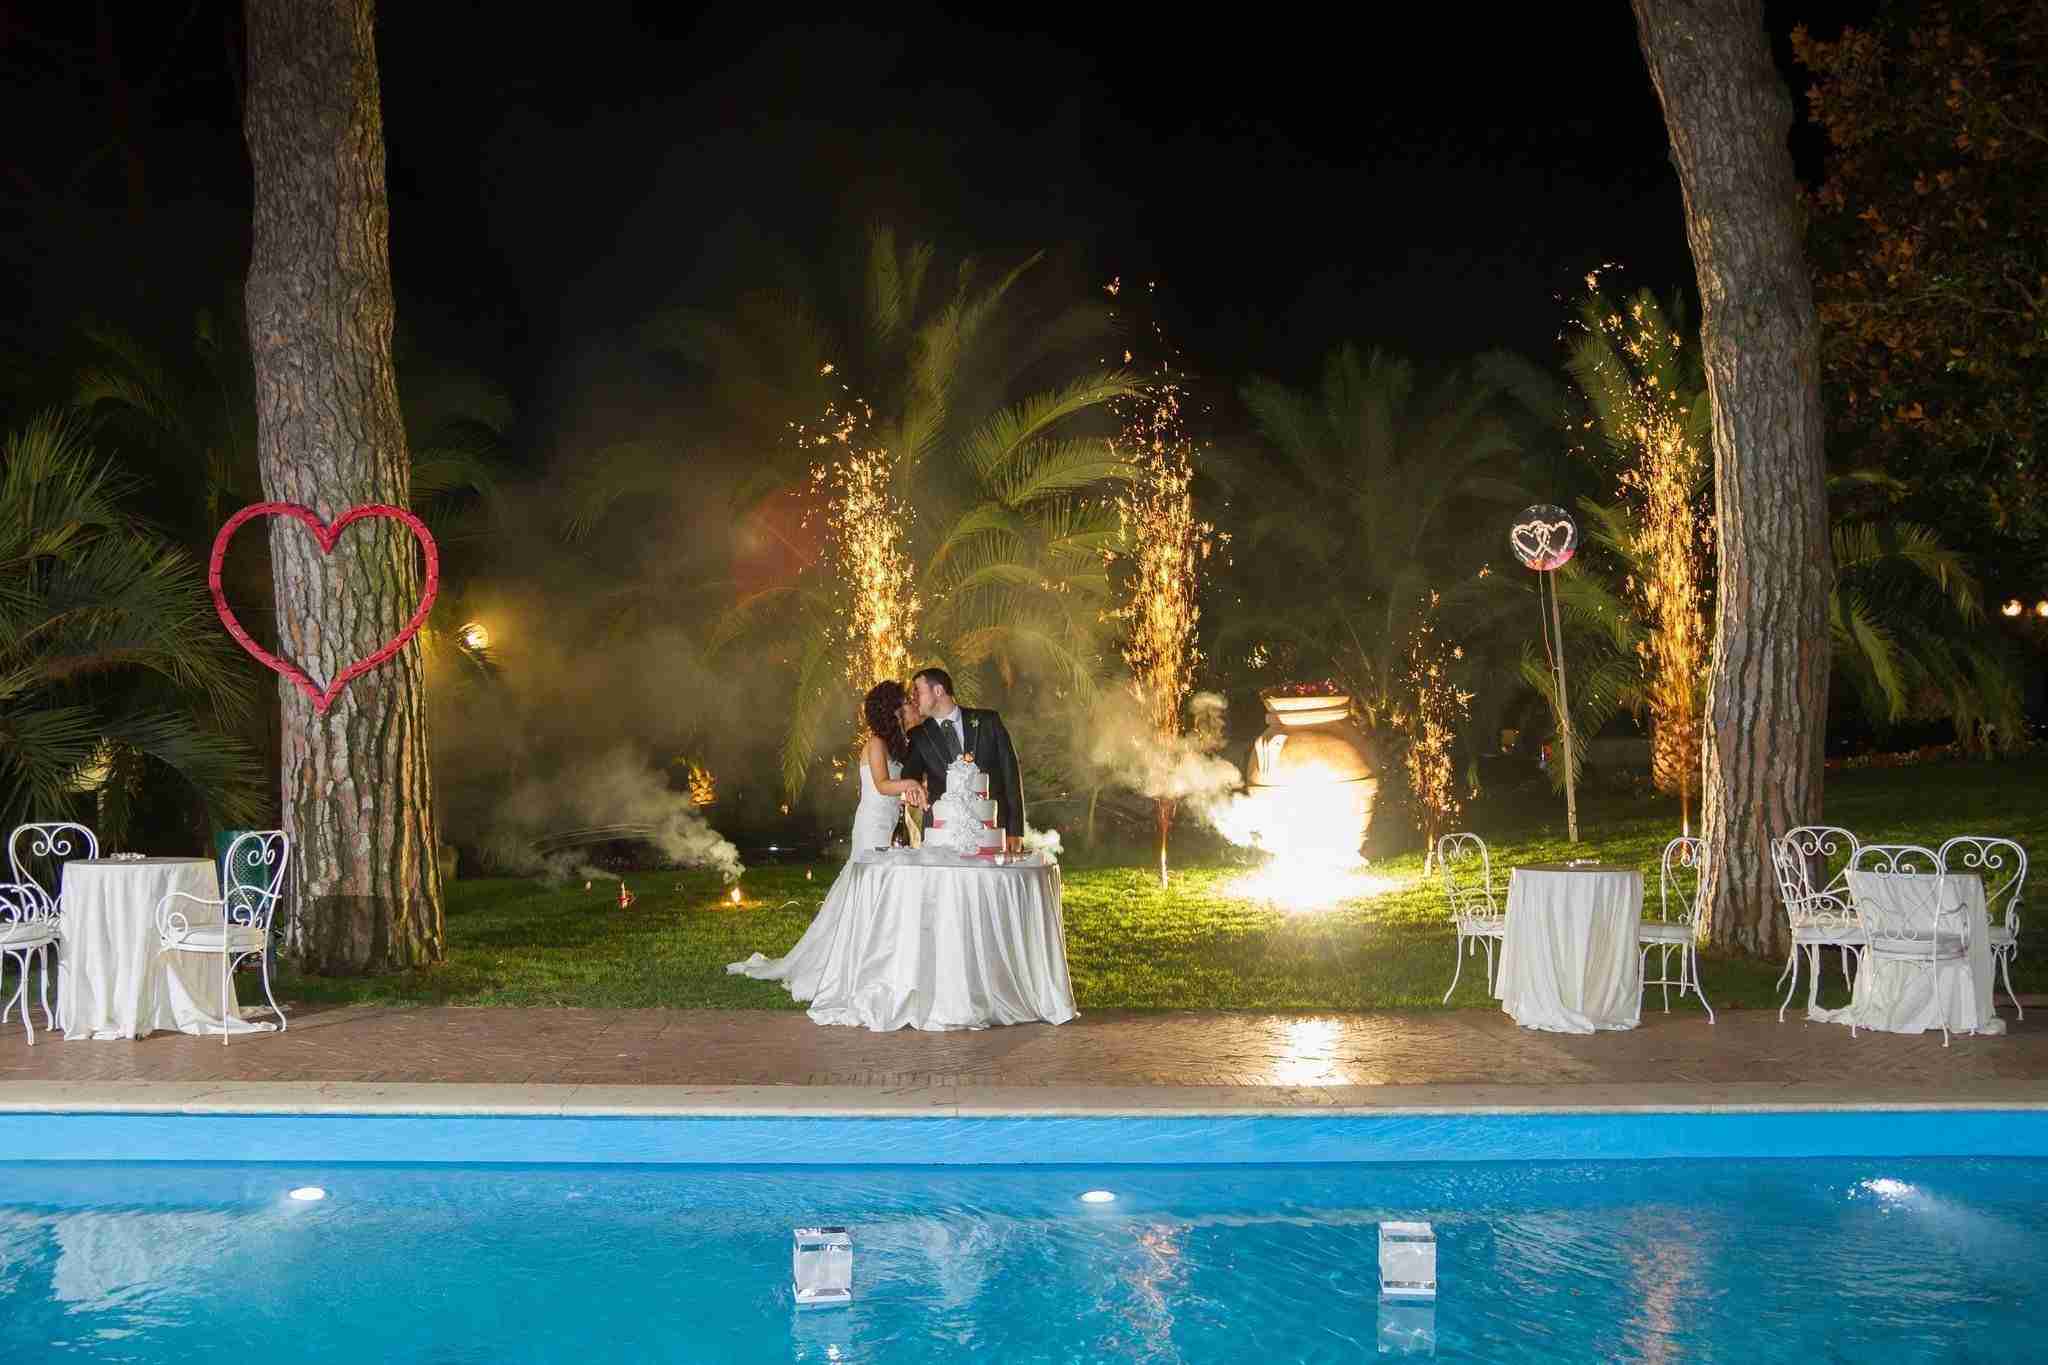 Matrimonio all'hotel villa Ferrata: esterno, giardino con piscina